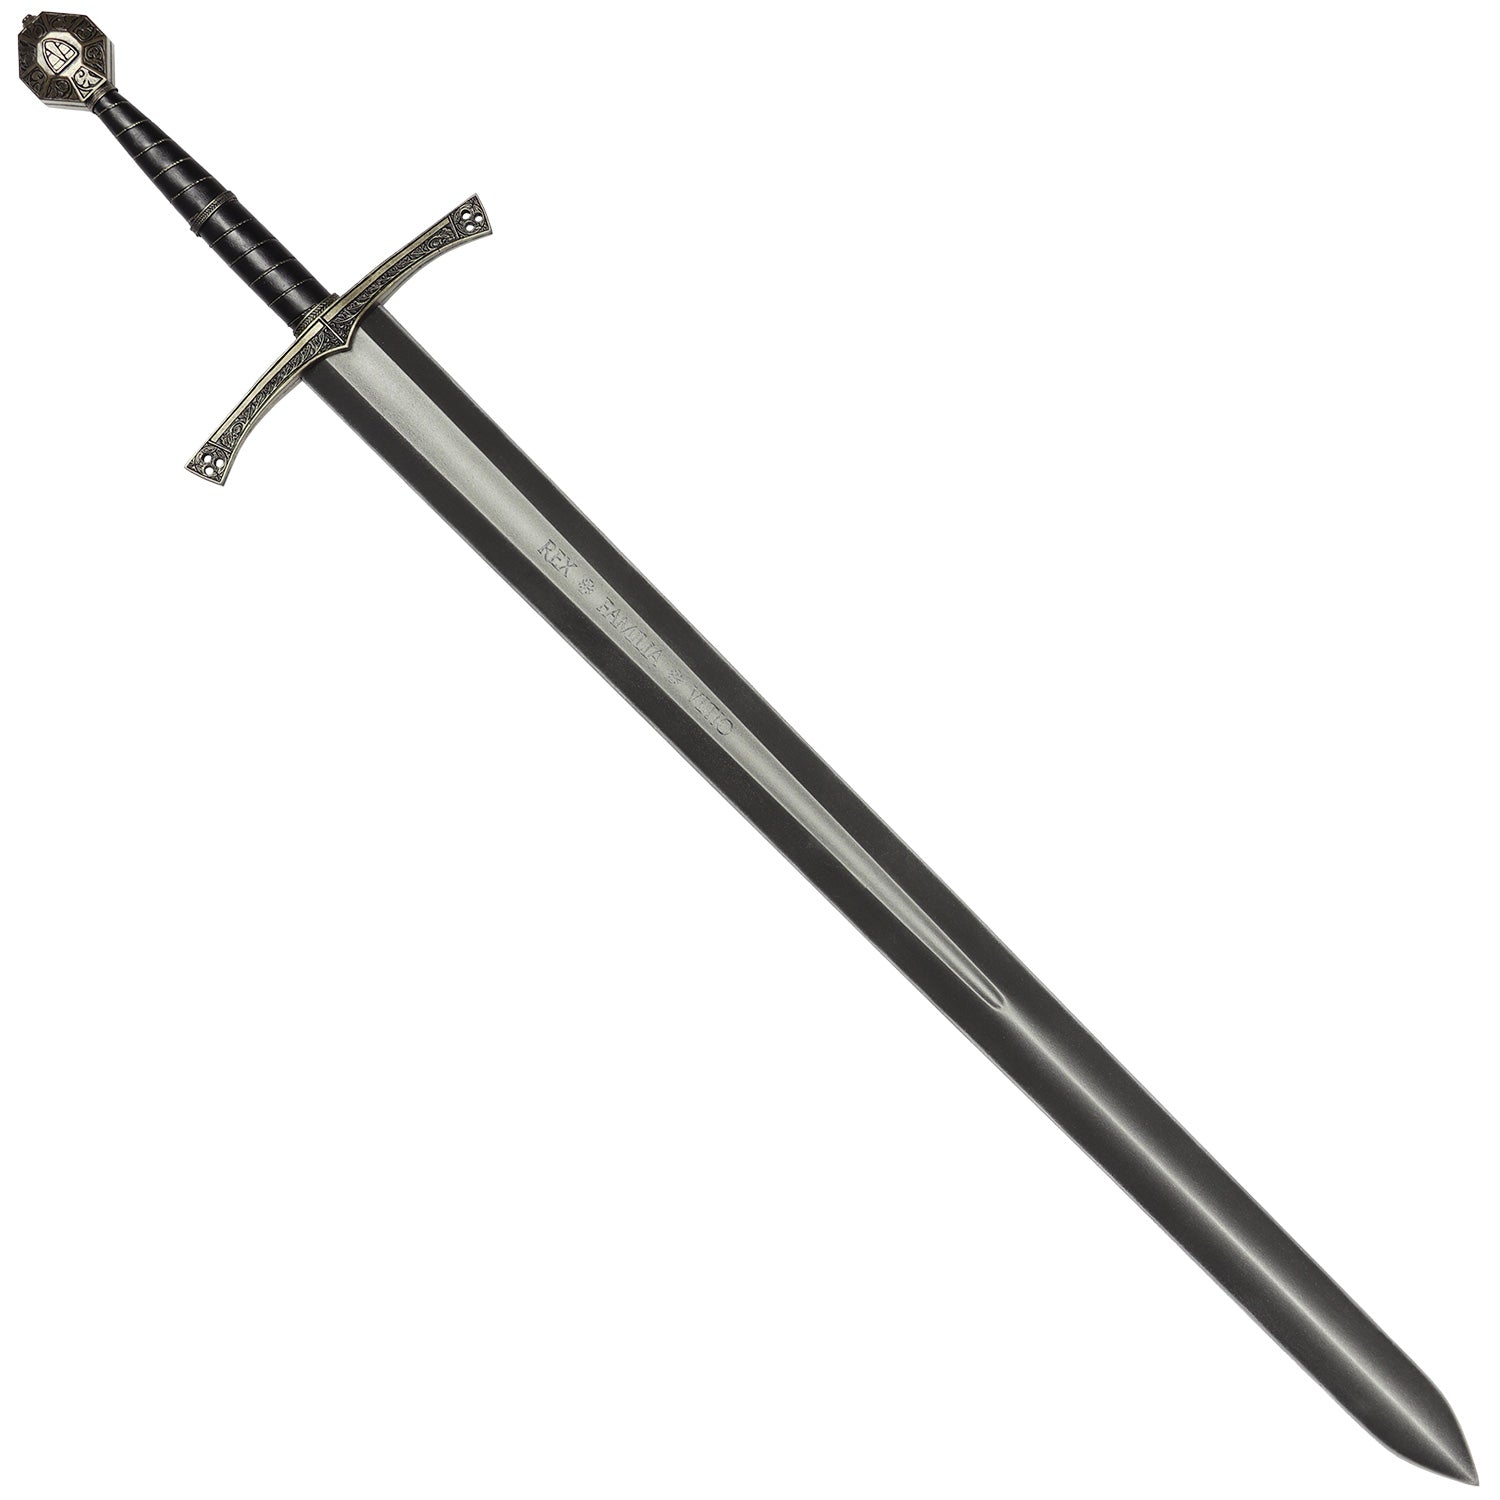 Sir Radzig's Sword